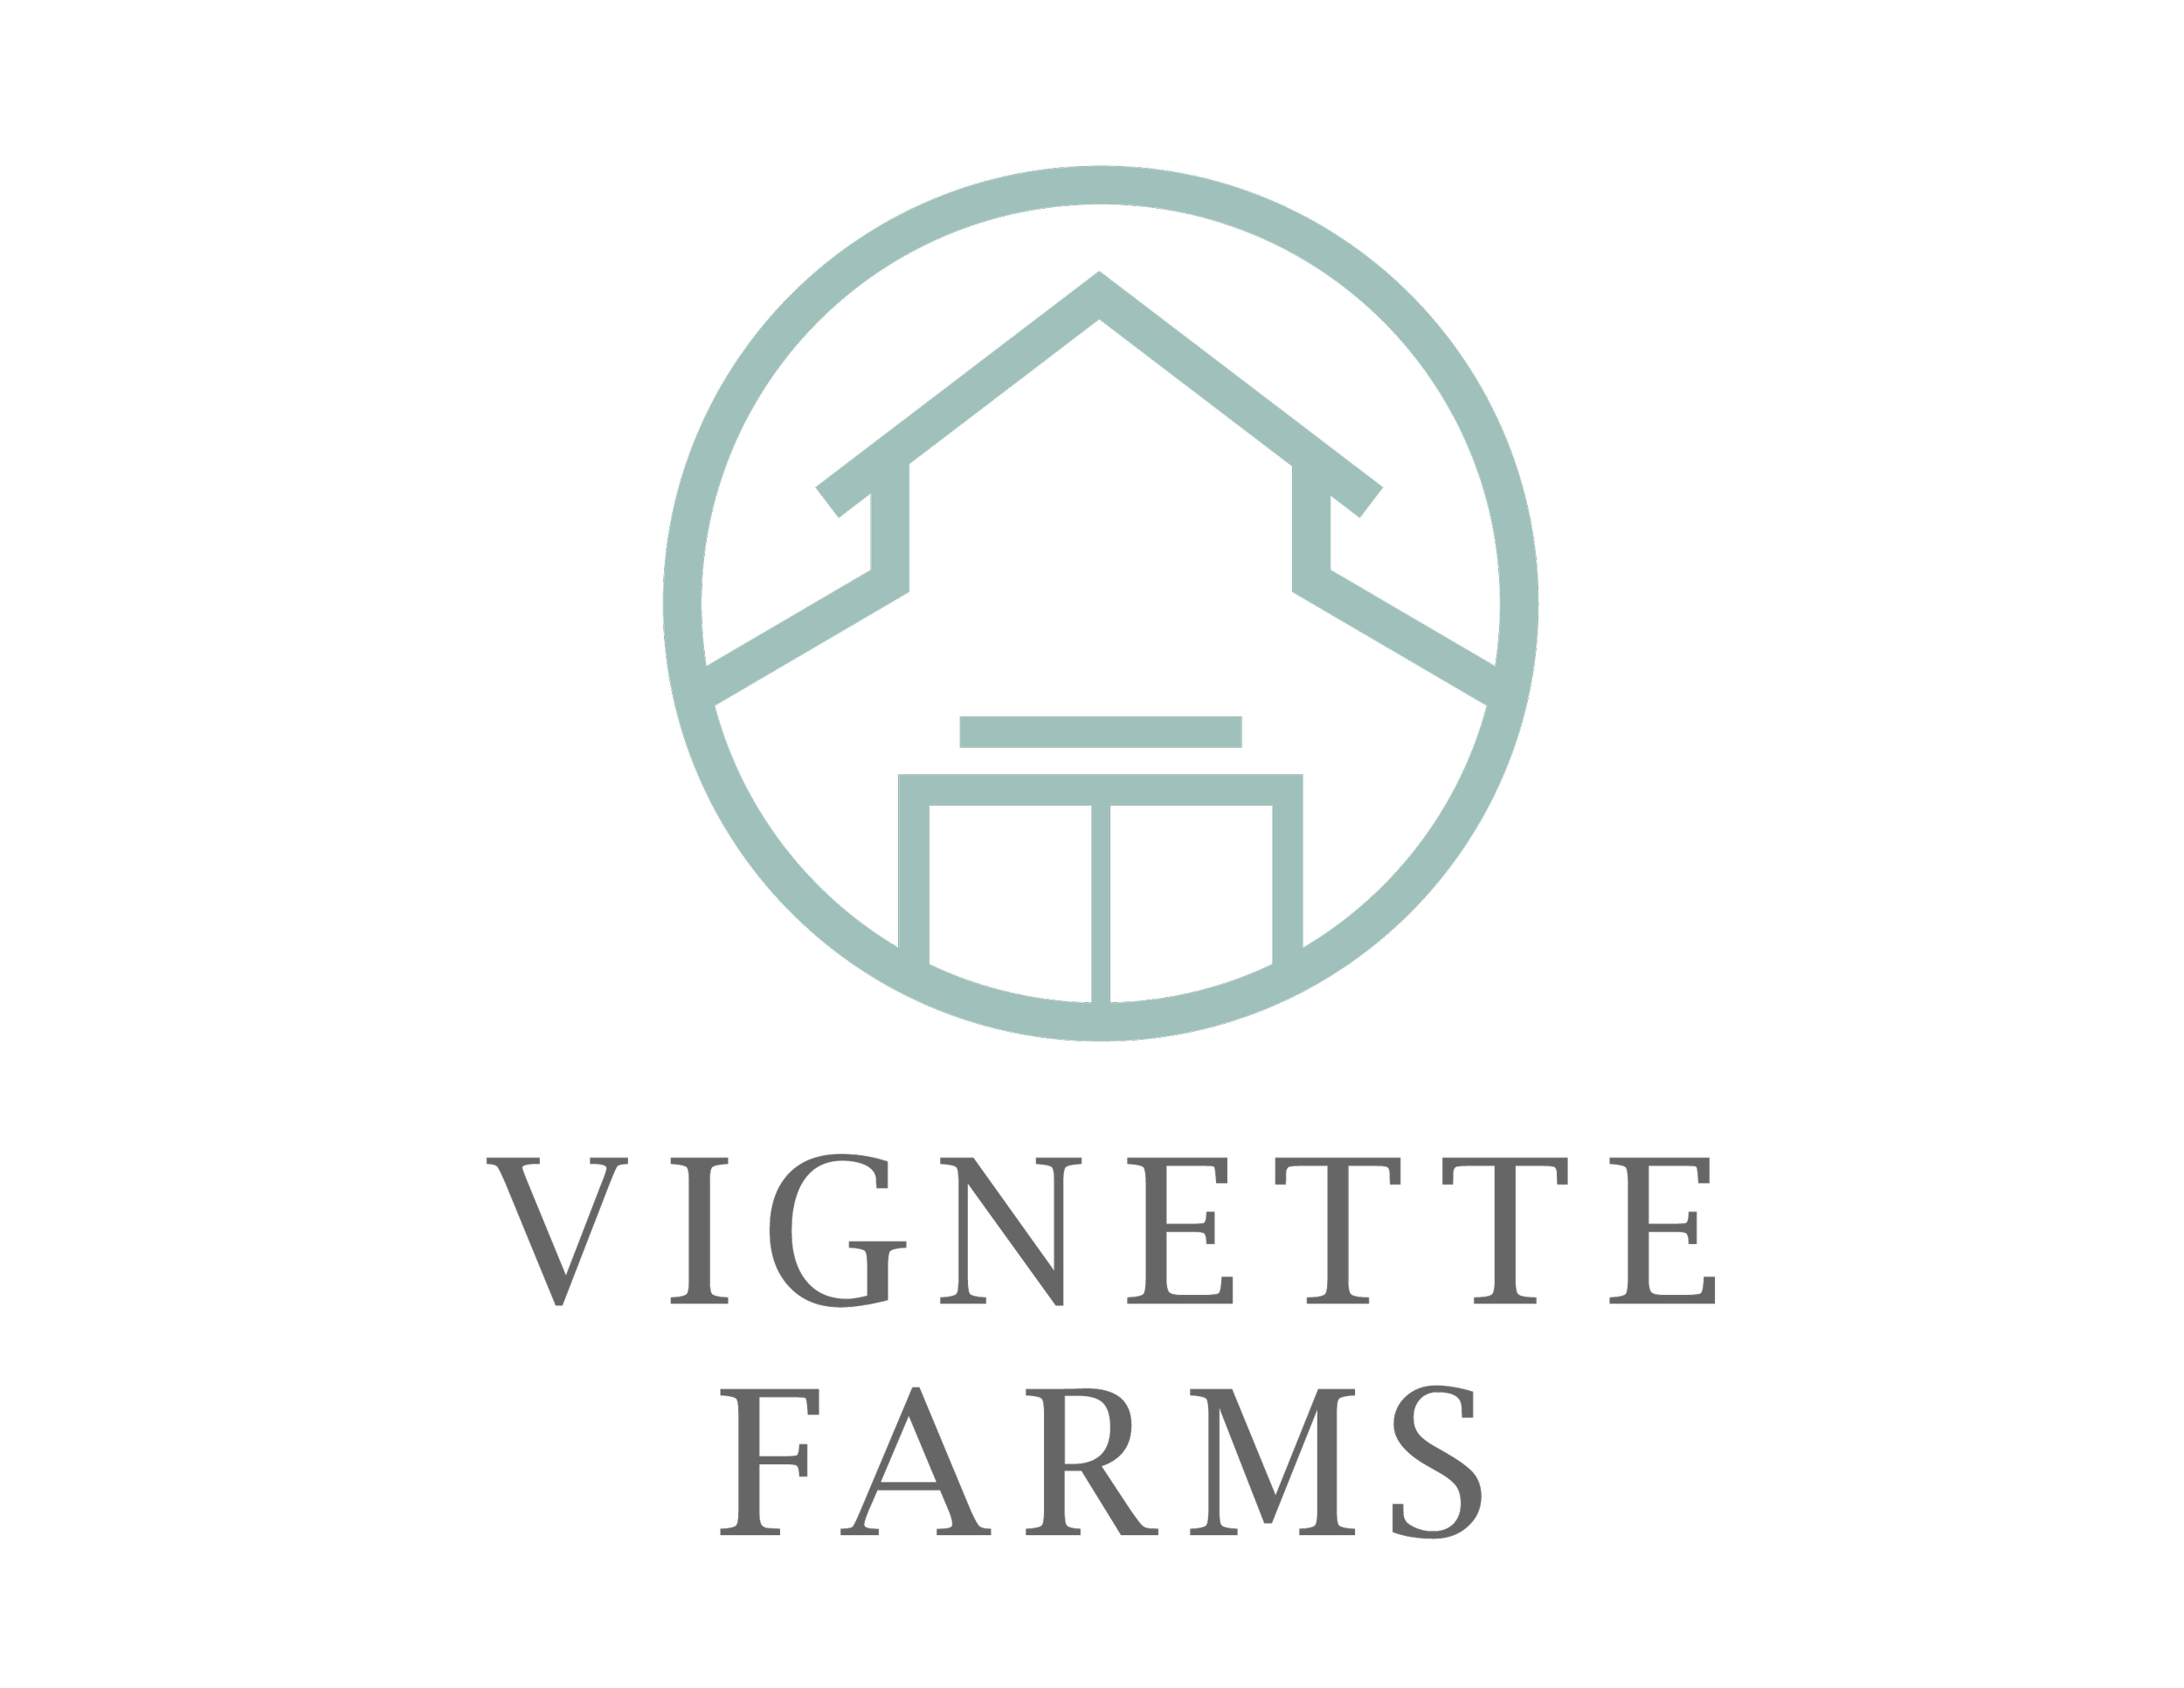 Vignette Farms